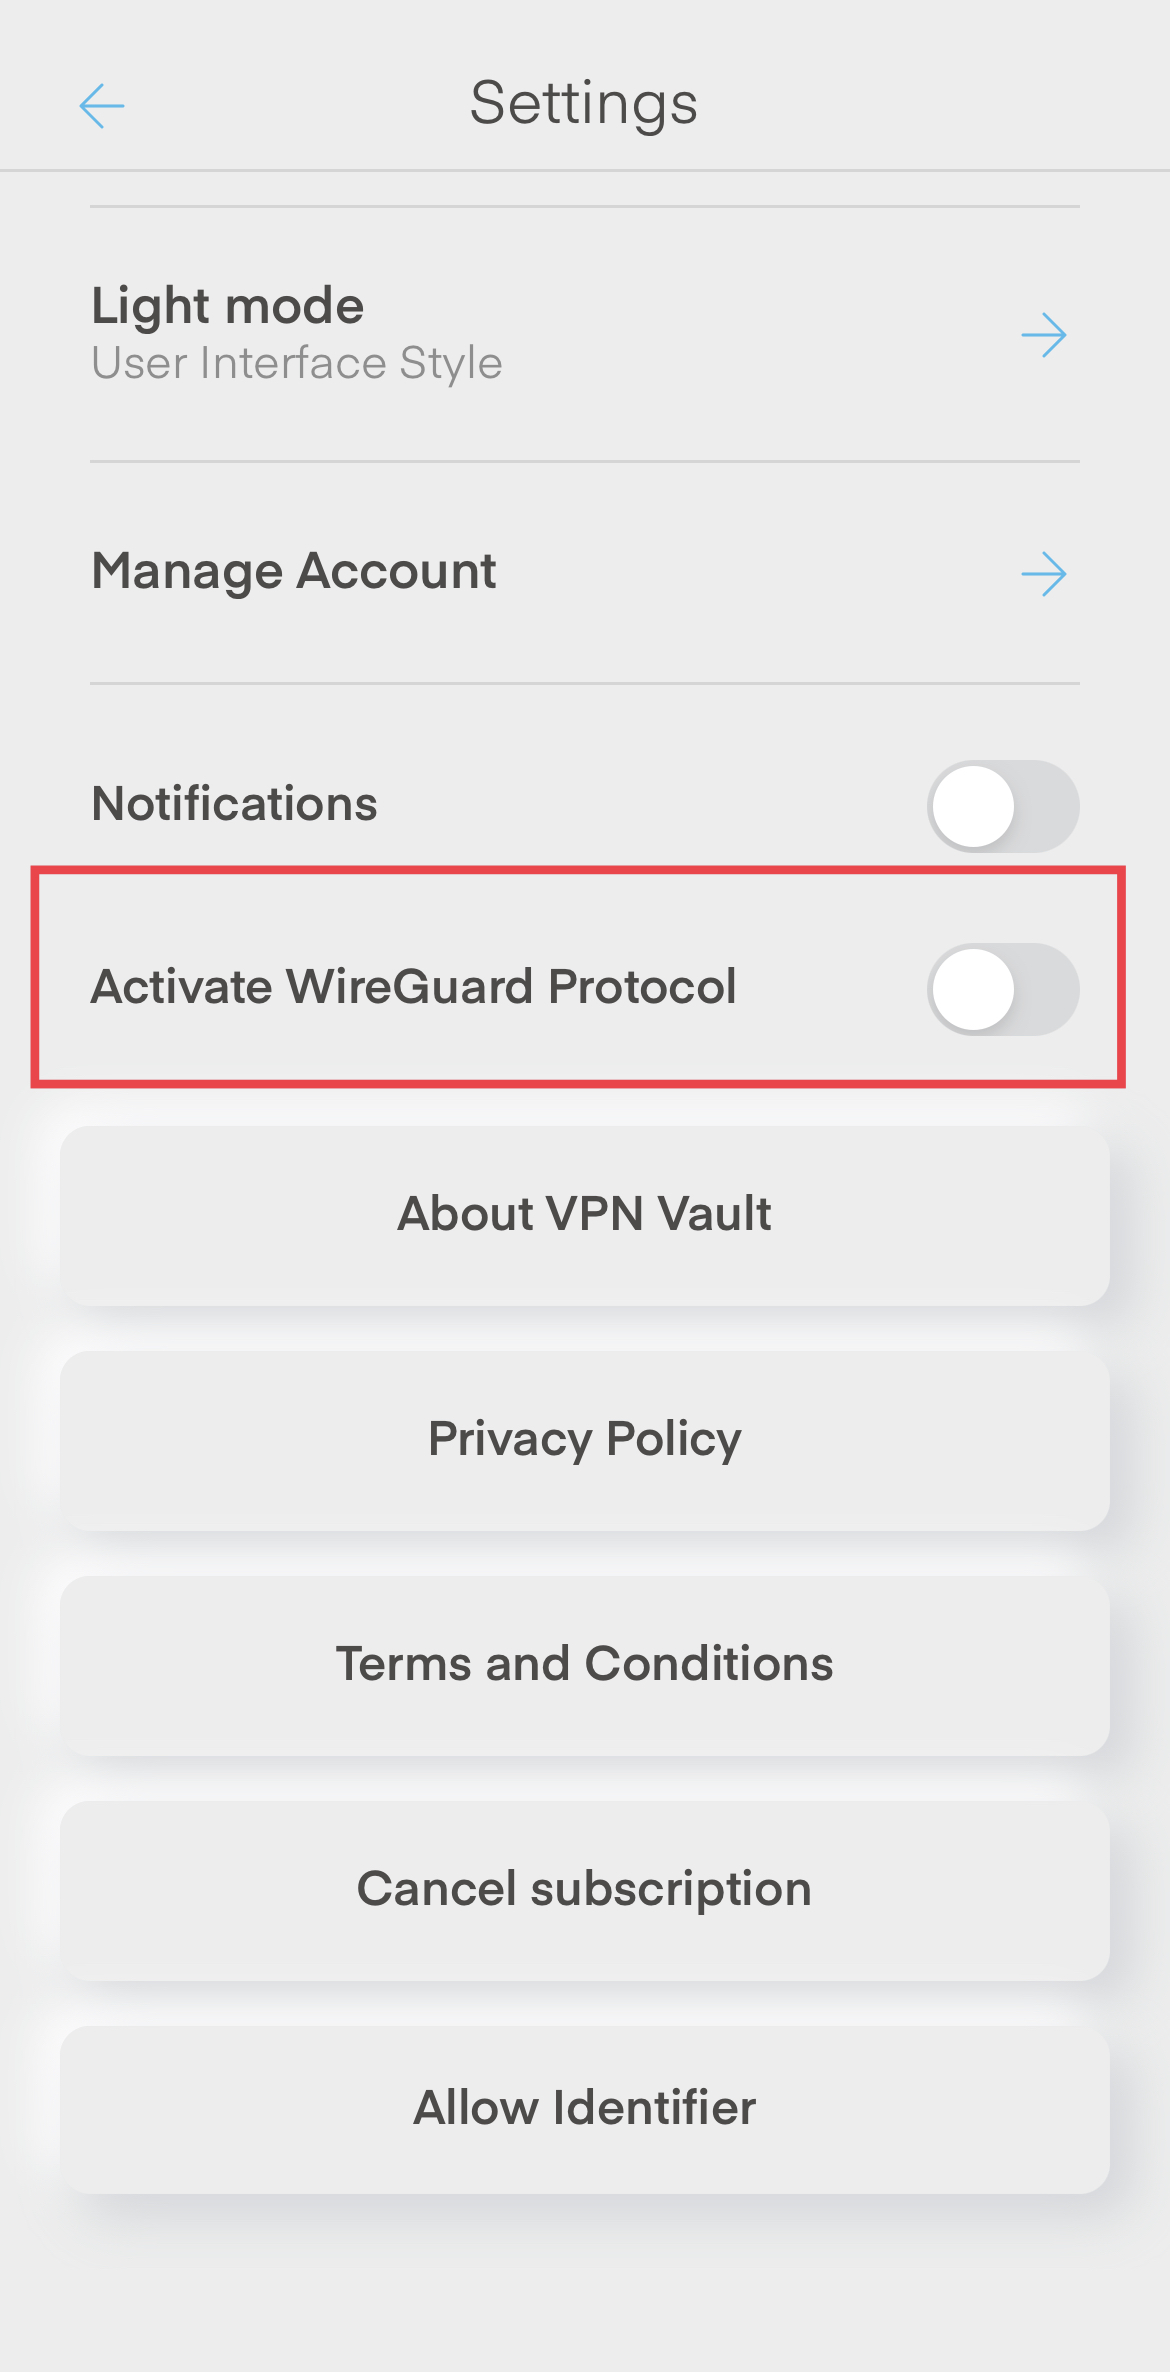 VPN_Vault_Turn_On_WireGuard_Protocol.jpeg